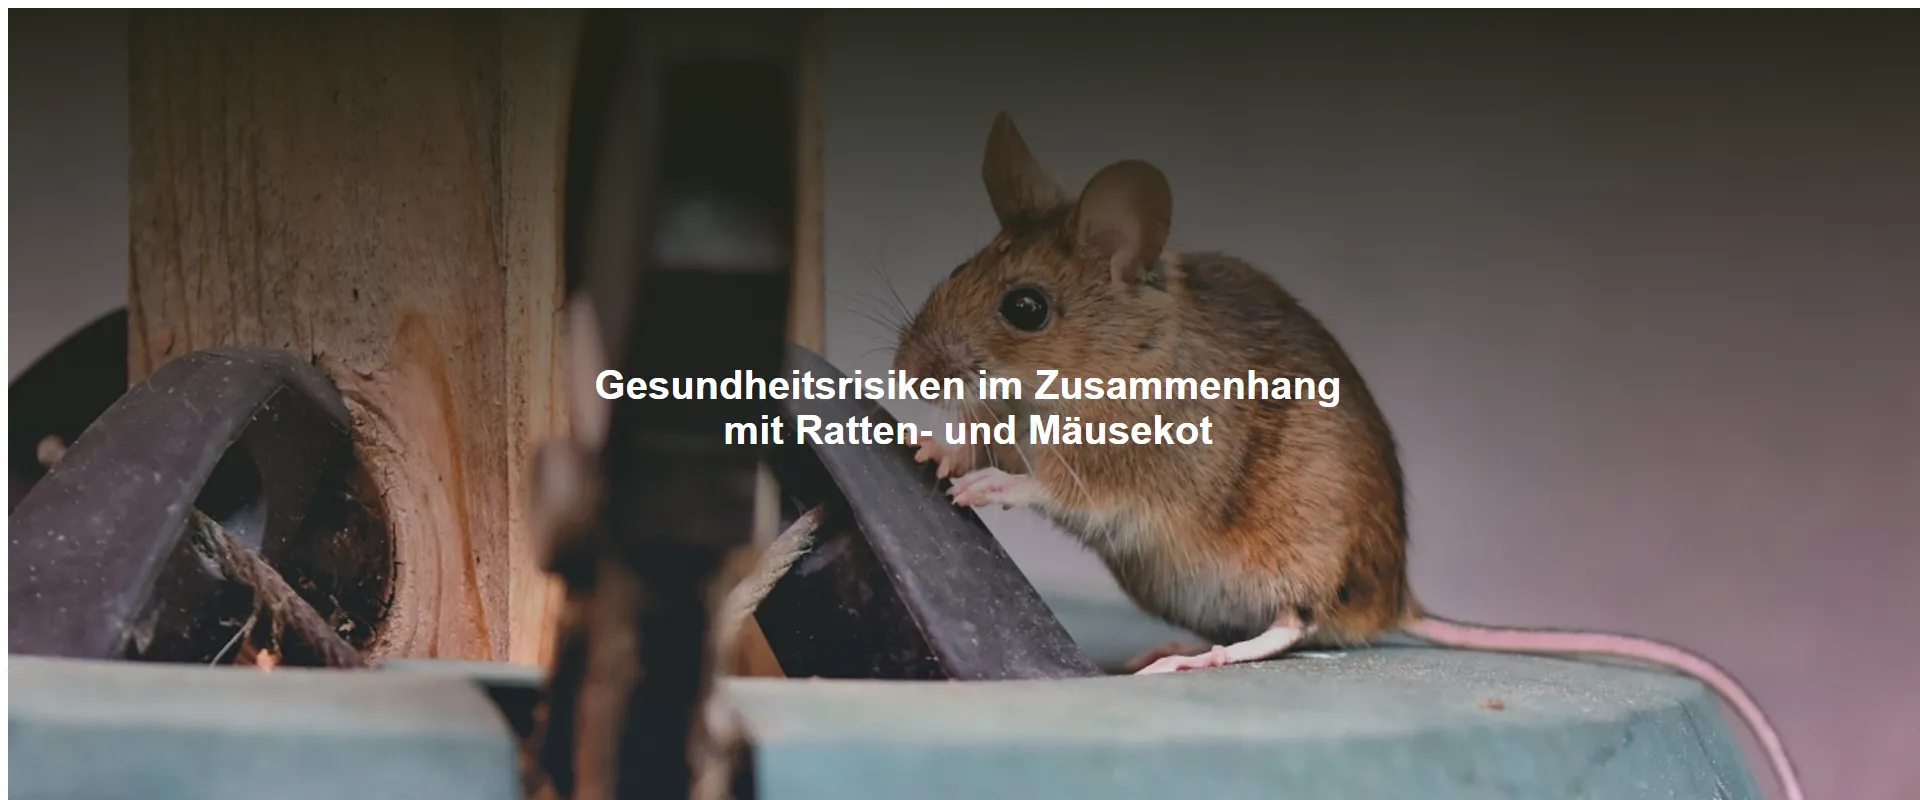 Gesundheitsrisiken im Zusammenhang mit Ratten- und Mäusekot